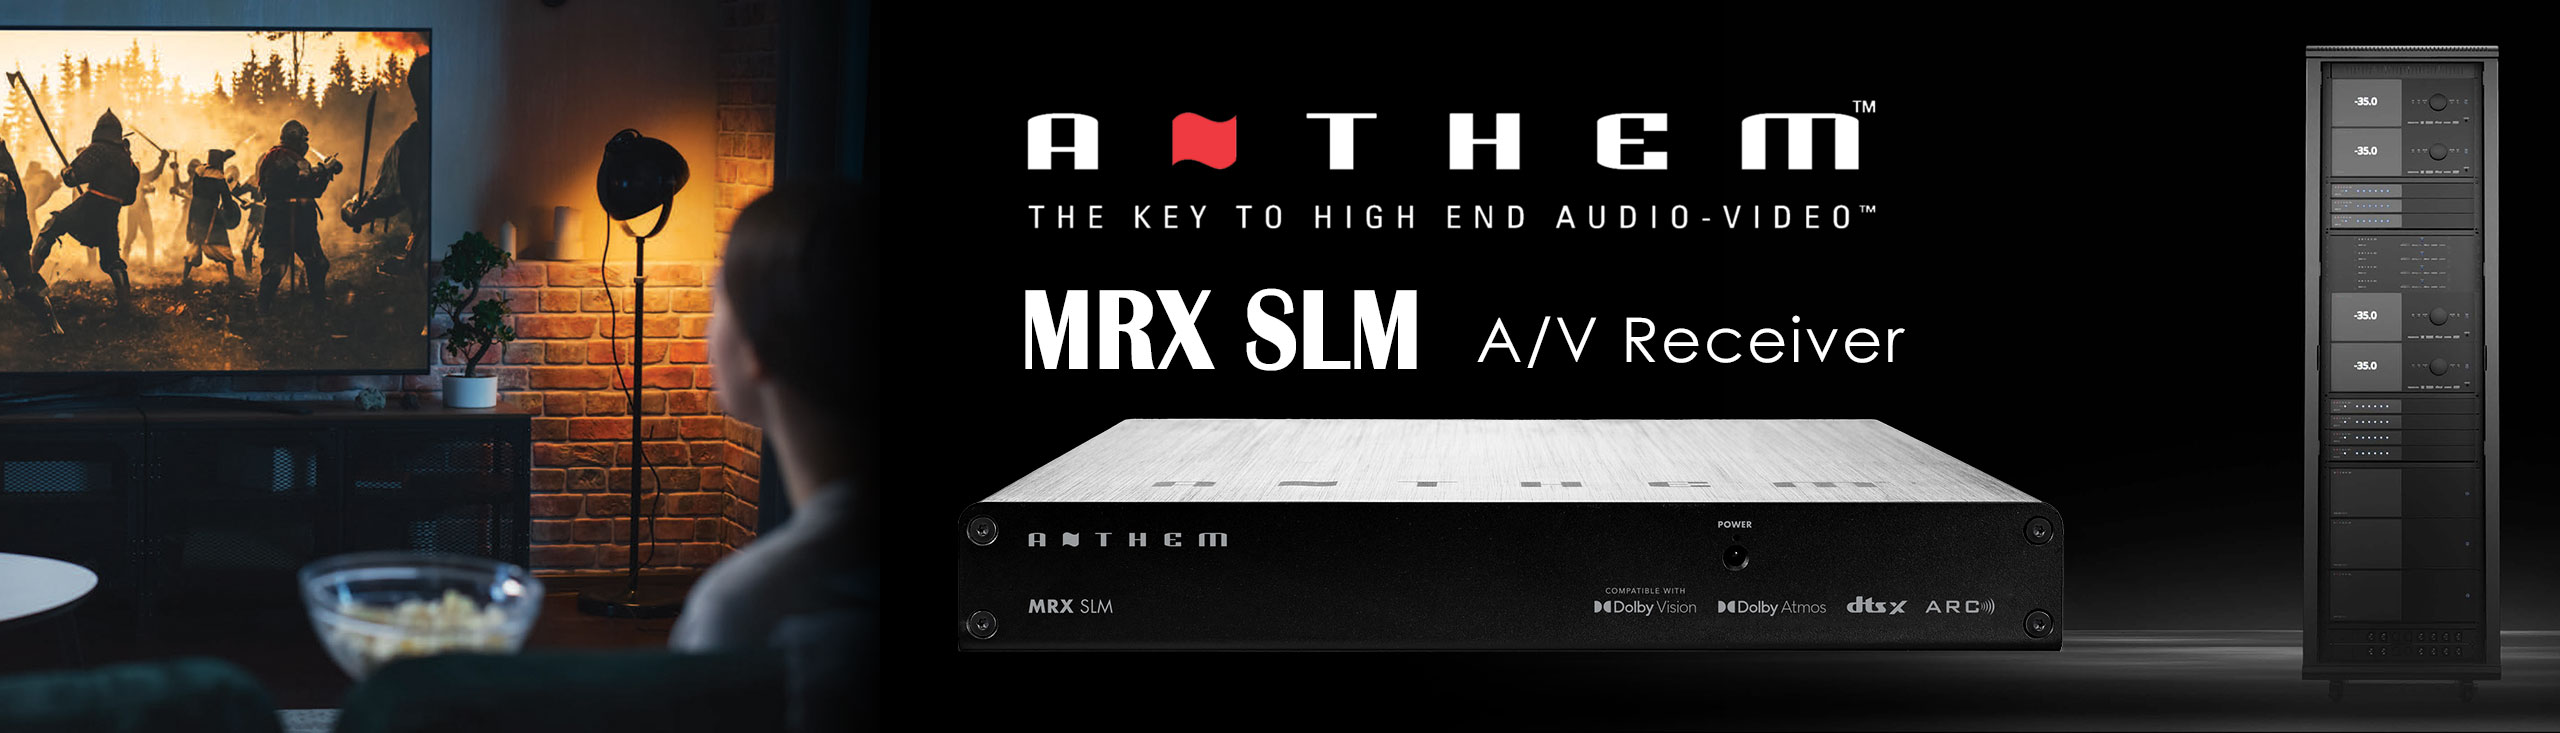 ANTHEM MRX-SLM